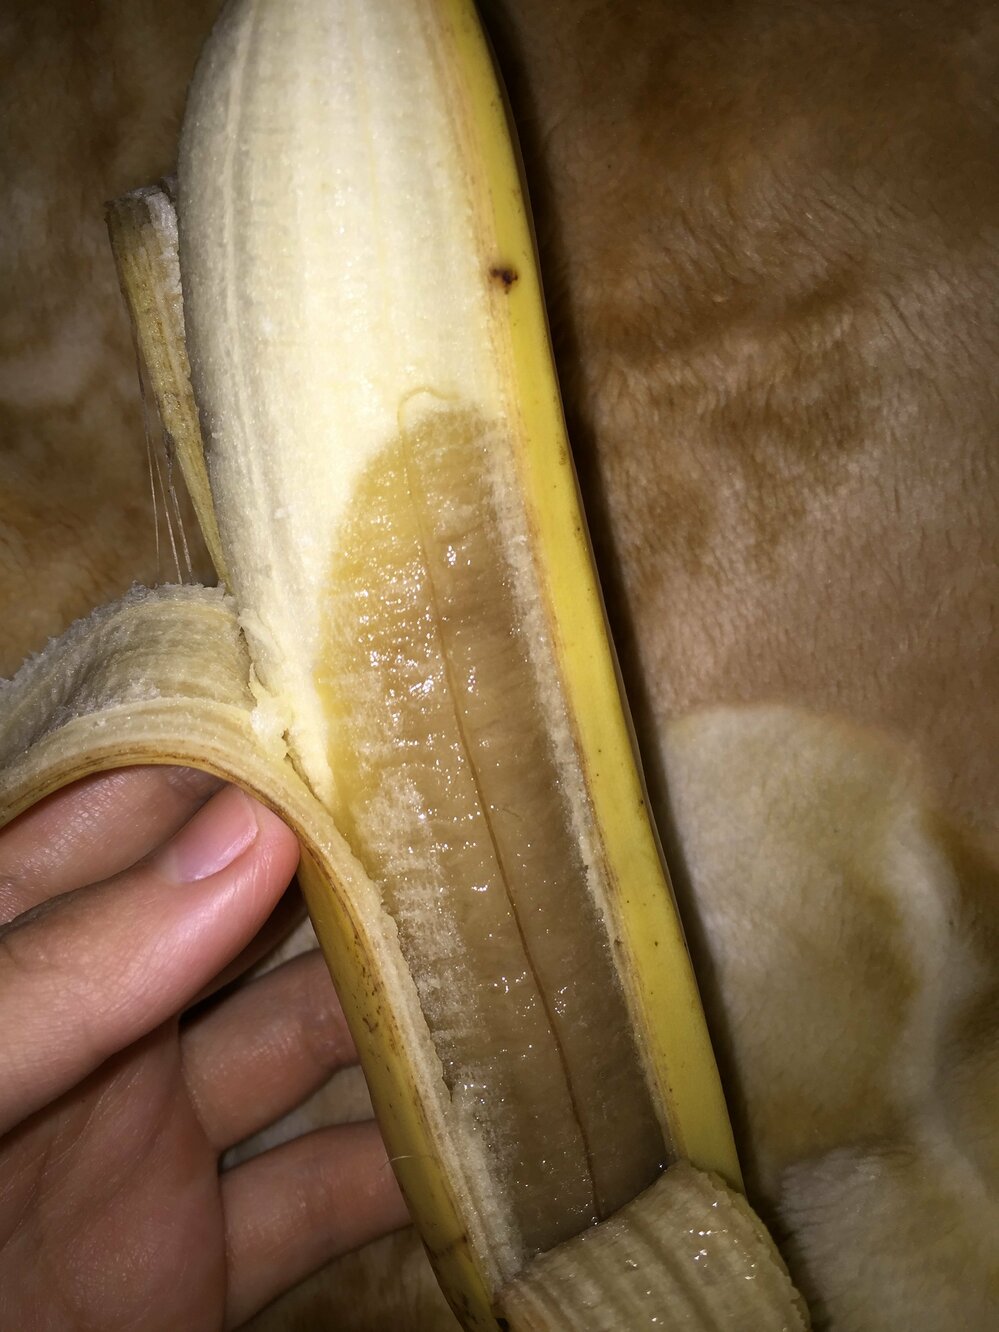 2日前にスーパーで買ったバナナを食べようとしたら皮が黄色なのに中が茶色くなって Yahoo 知恵袋